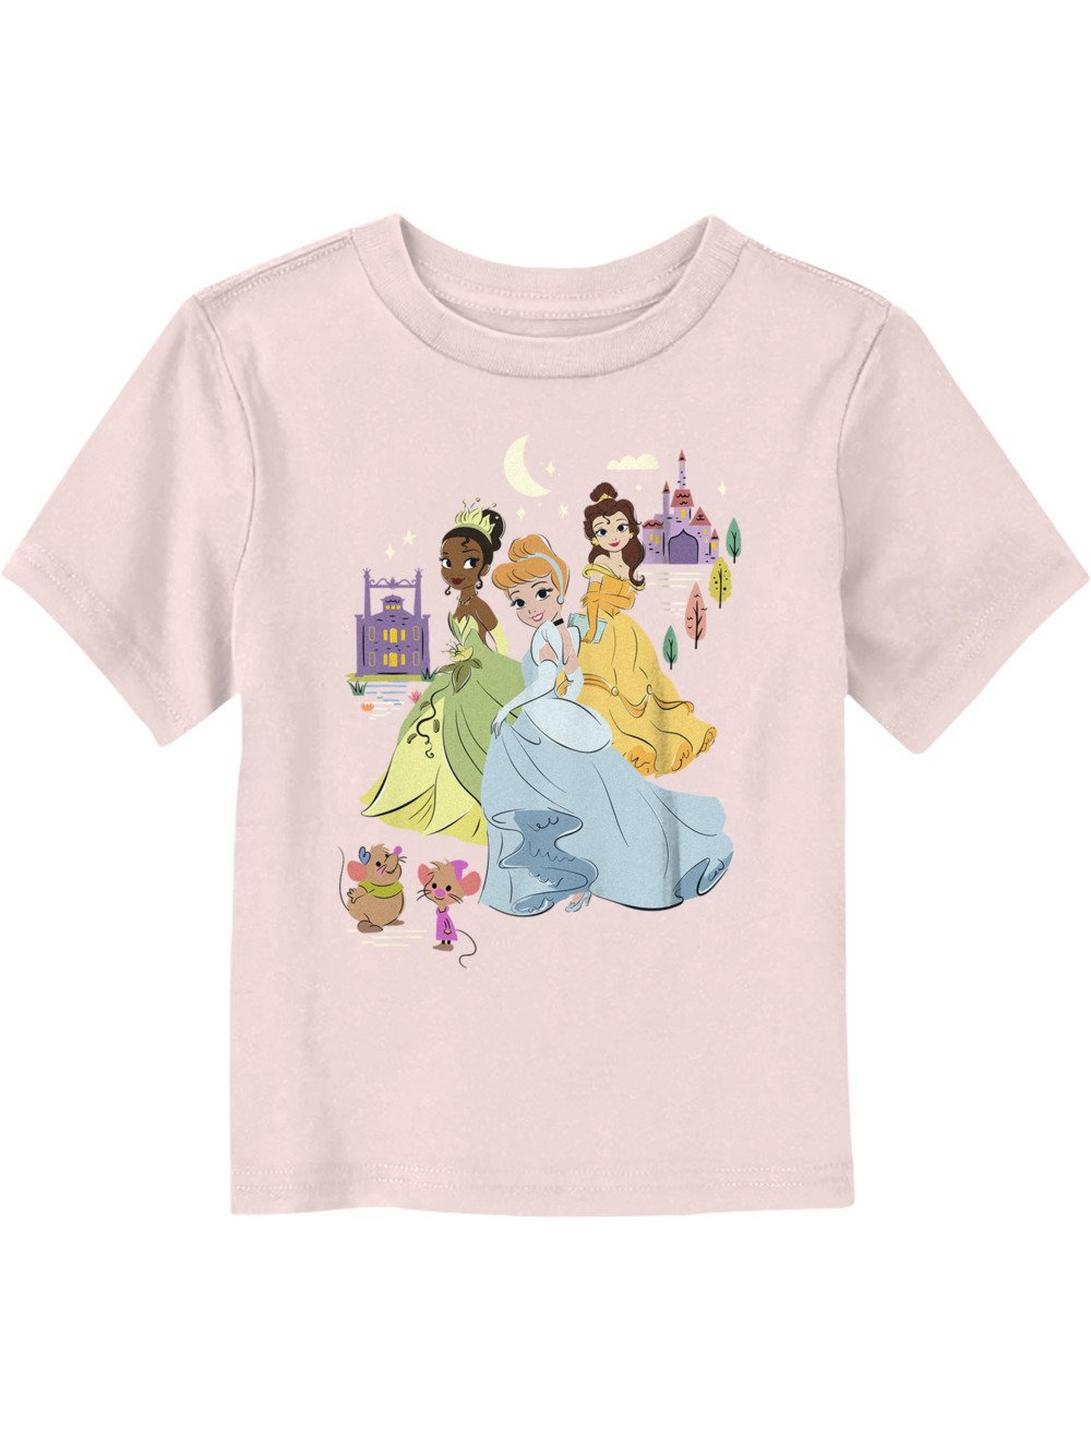 Disney Princesses Cinderella Tiana & Belle Toddler T-Shirt, LIGHT PINK, hi-res